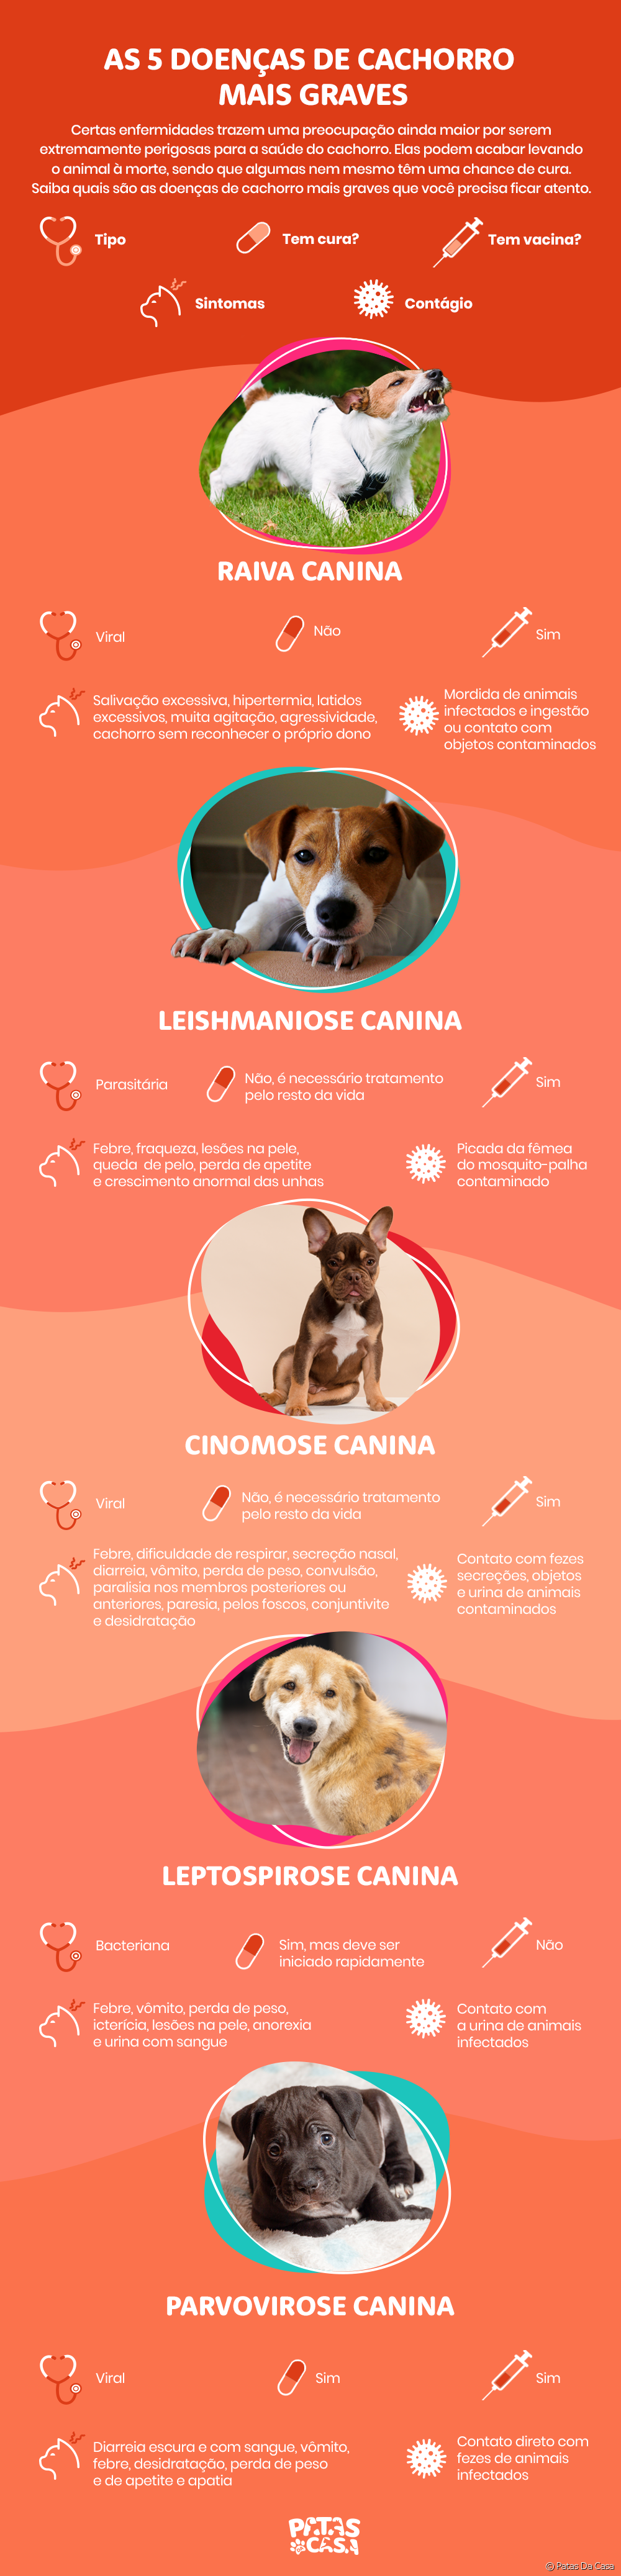  Sien die ernstigste hondsiektes in infographic